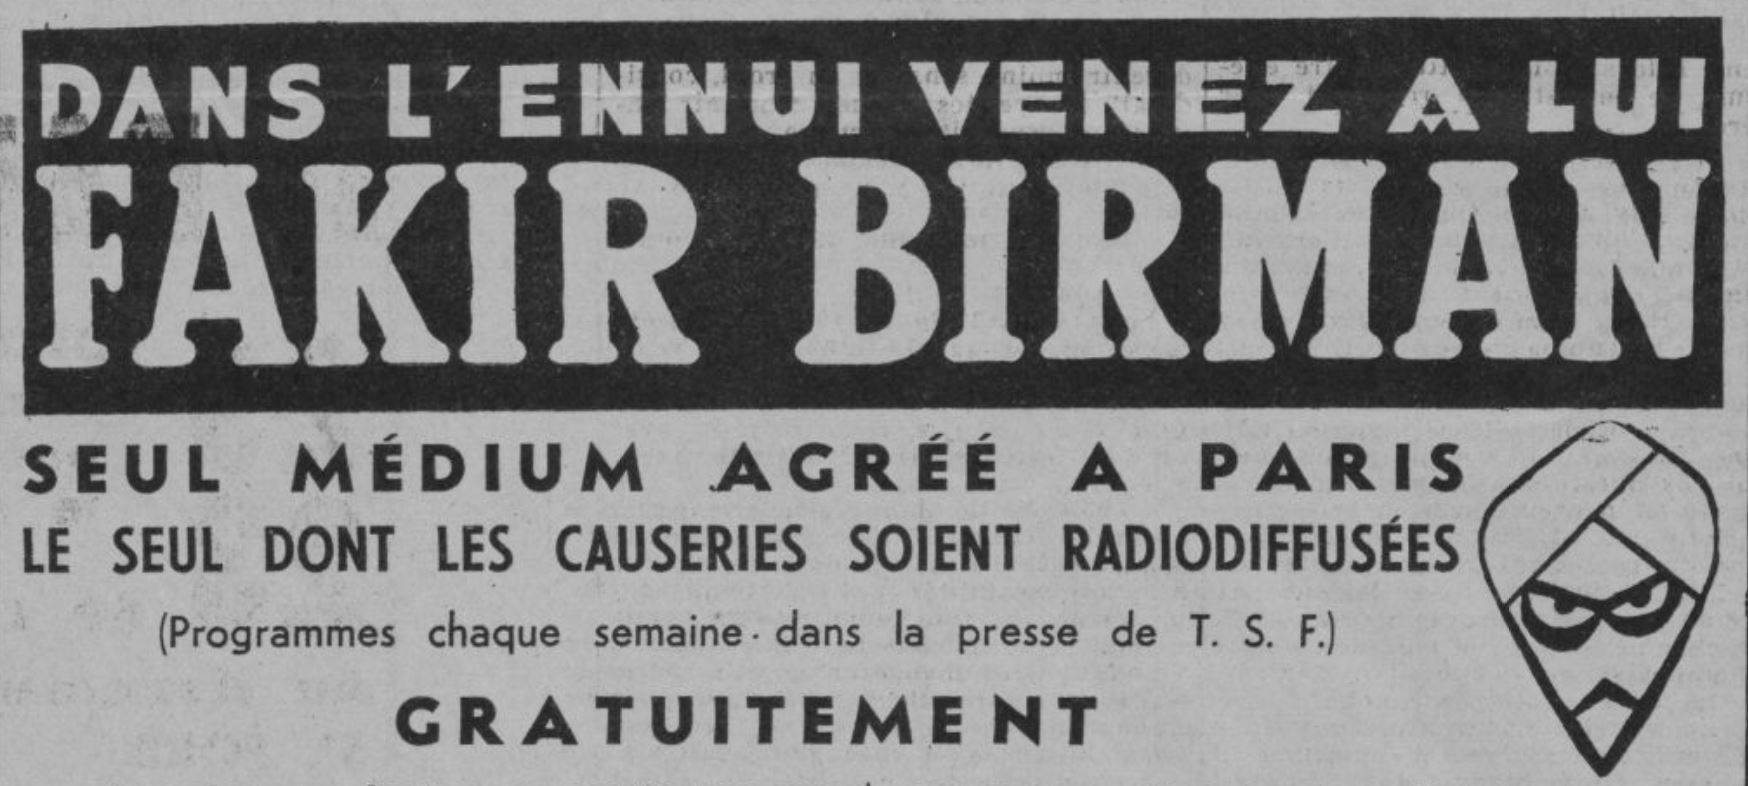 Publicité pour le Fakir Birman parue dans Marianne, 6 février 1935 - source : RetroNews-BnF